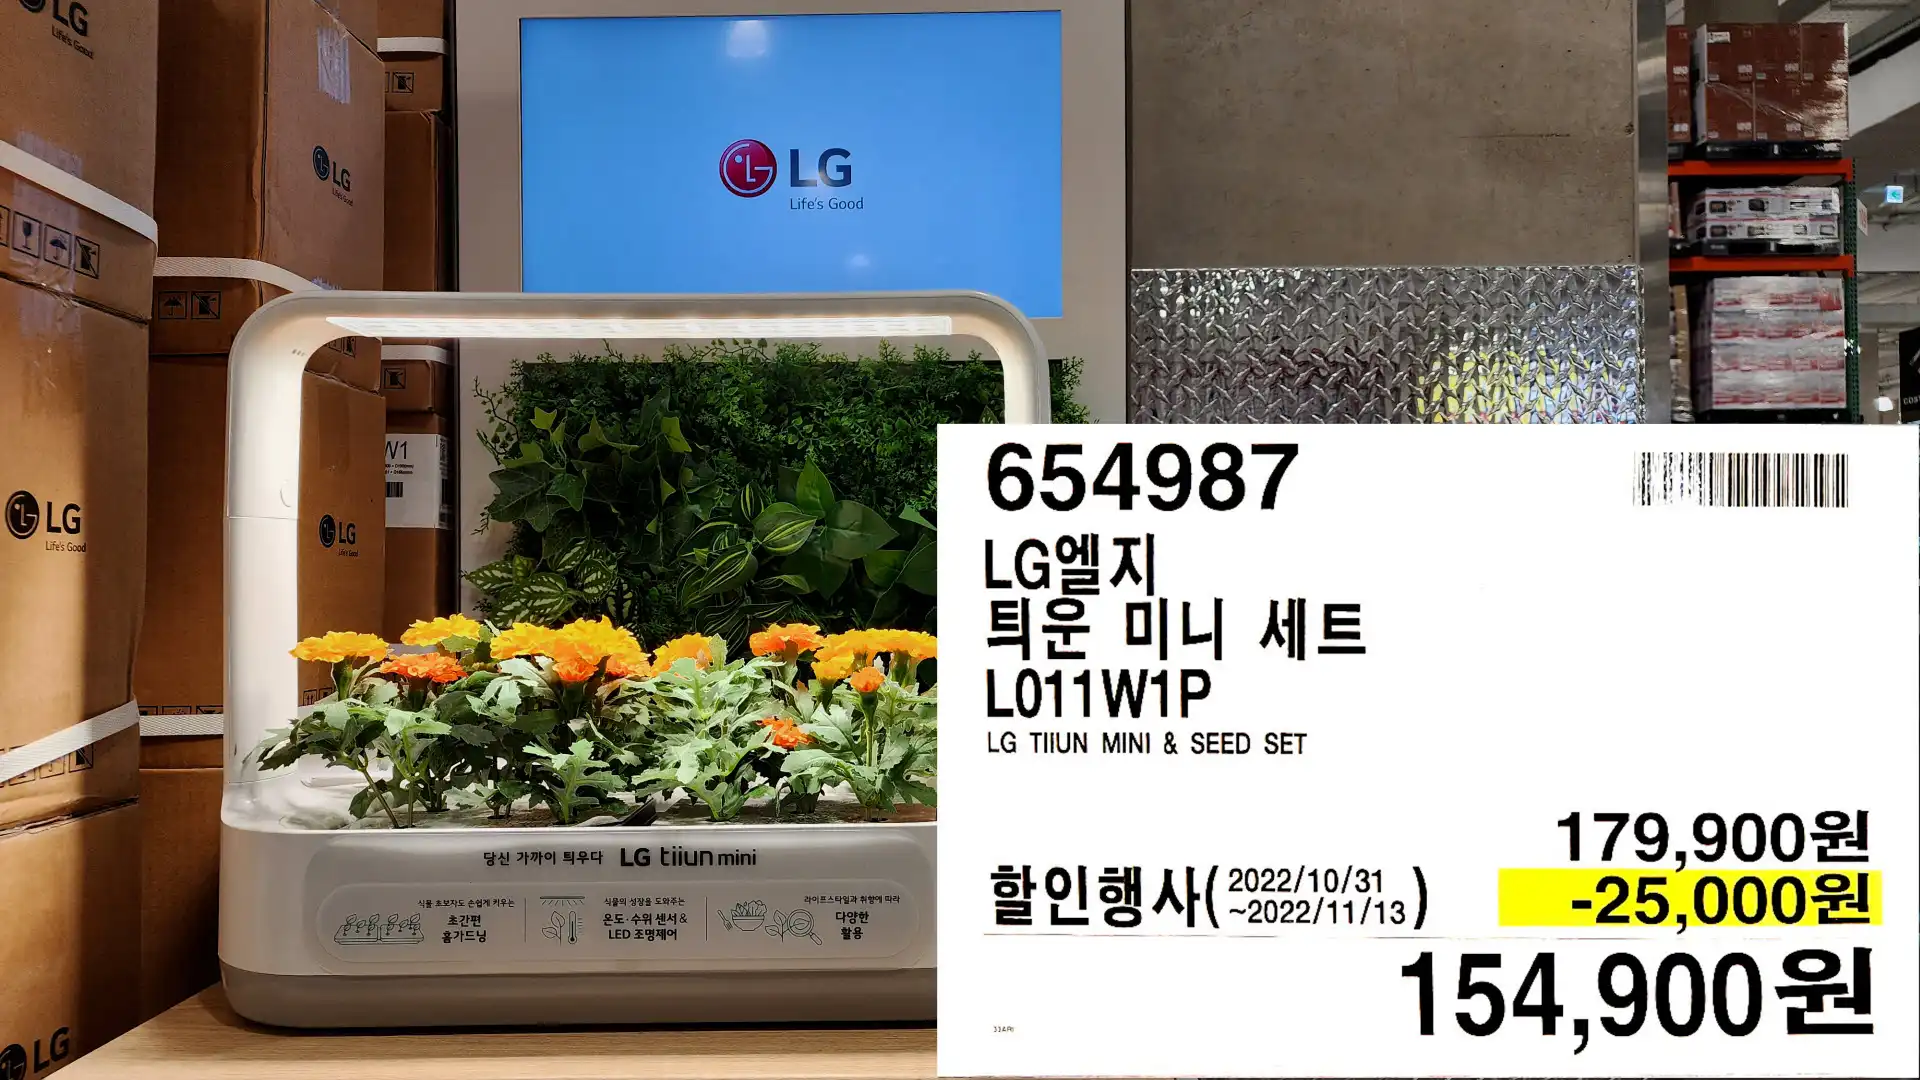 LG엘지
틔운 미니 세트
L011W1P
LG TIIUN MINI & SEED SET
154,900원